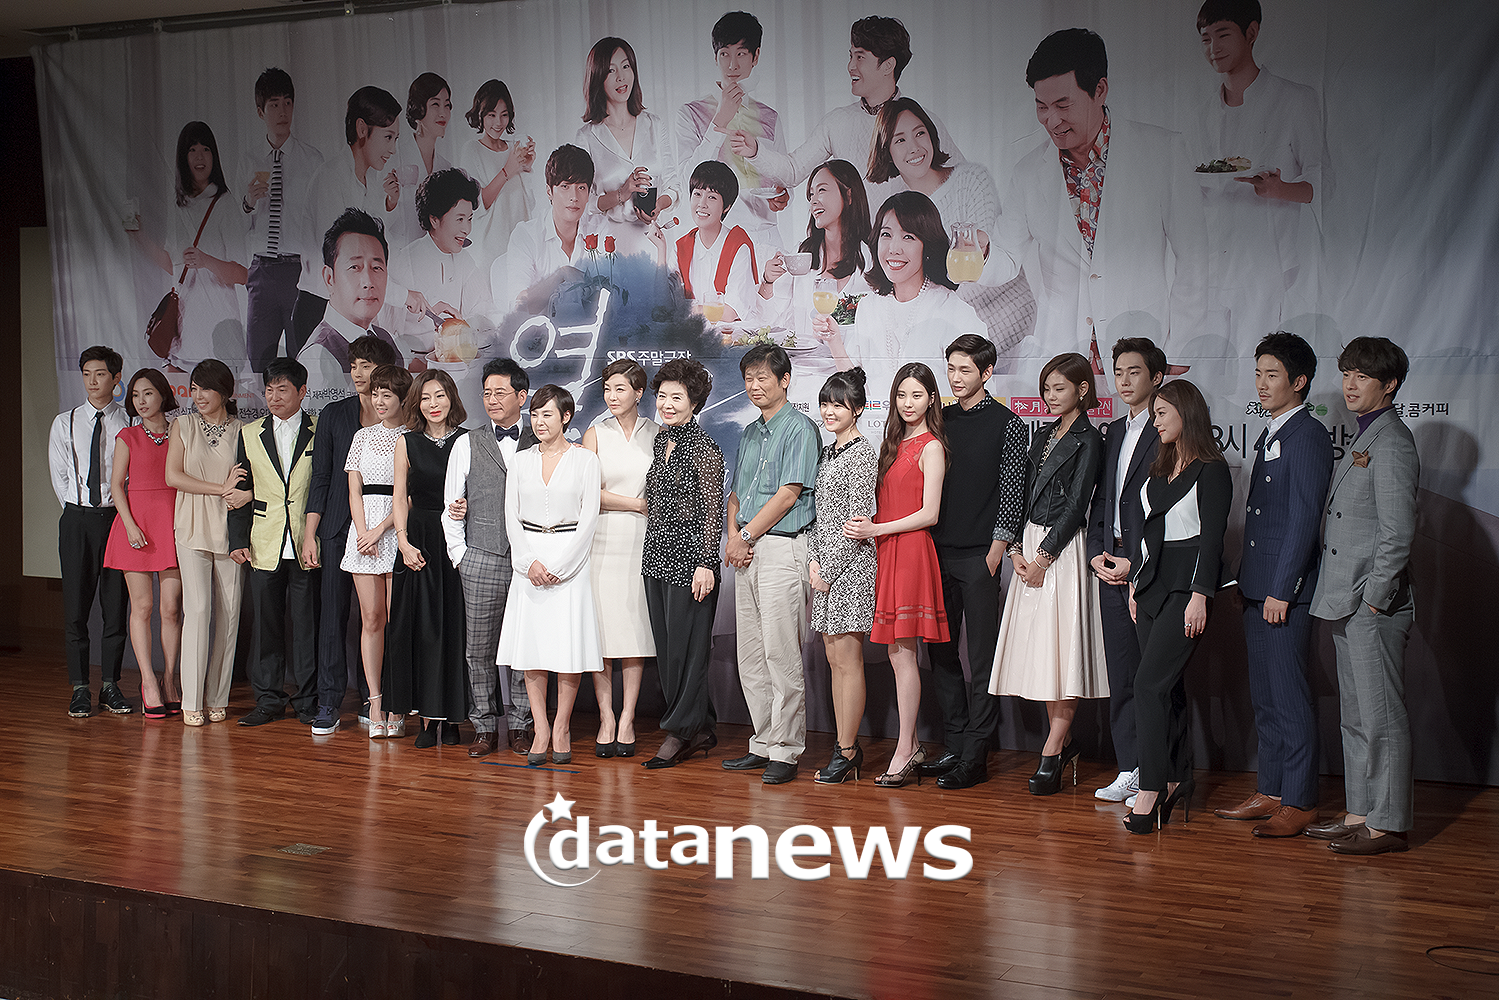 [OTHER][27-08-2013]Hình ảnh mới nhất từ bộ phim "Passionate Love" của SeoHyun - Page 2 2221954A52405F422AC425